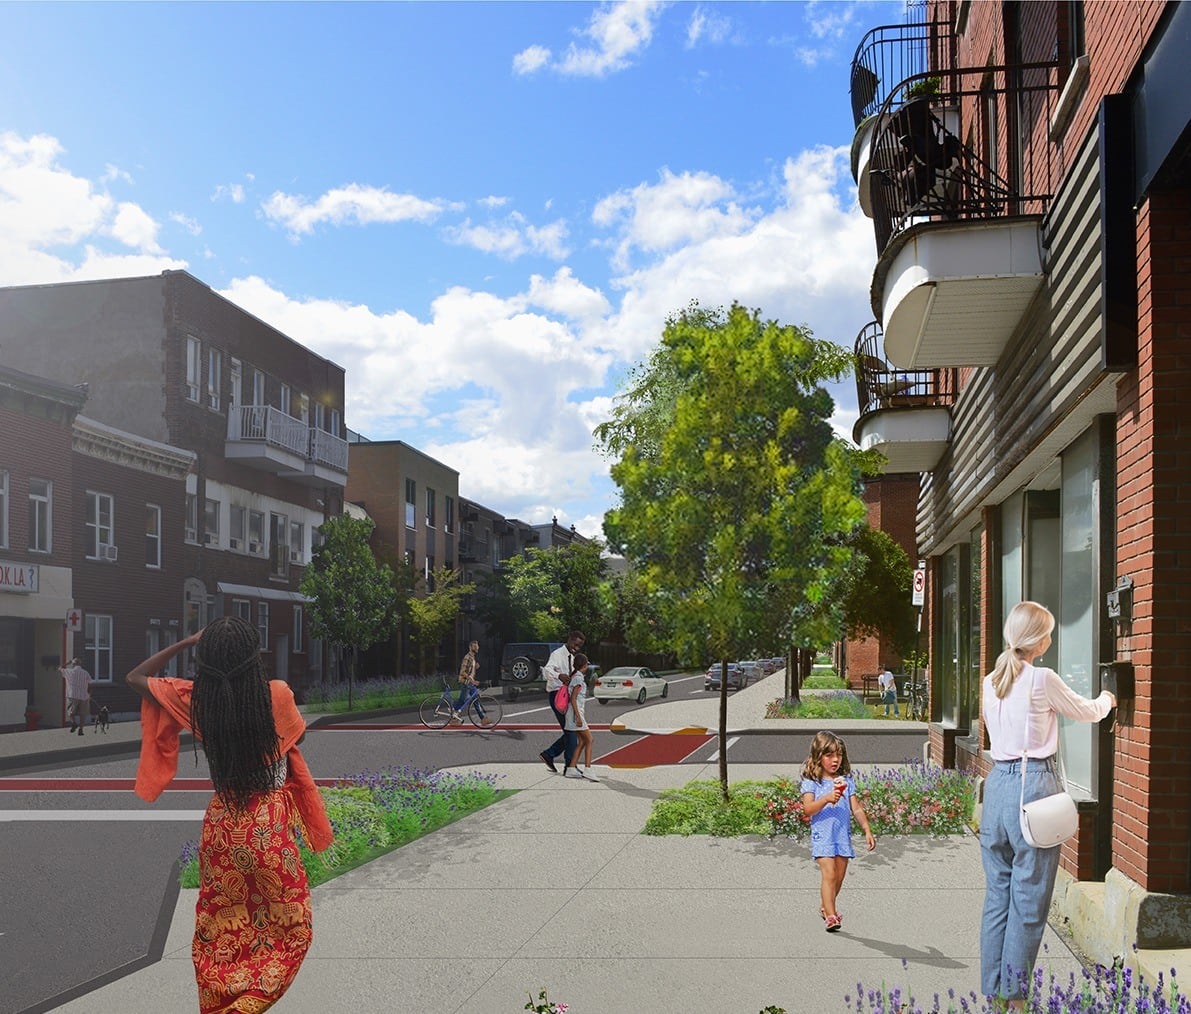 Réaménagement de la rue Frontenac | La Ville de Montréal annonce le concept de réaménagement de la rue Frontenac